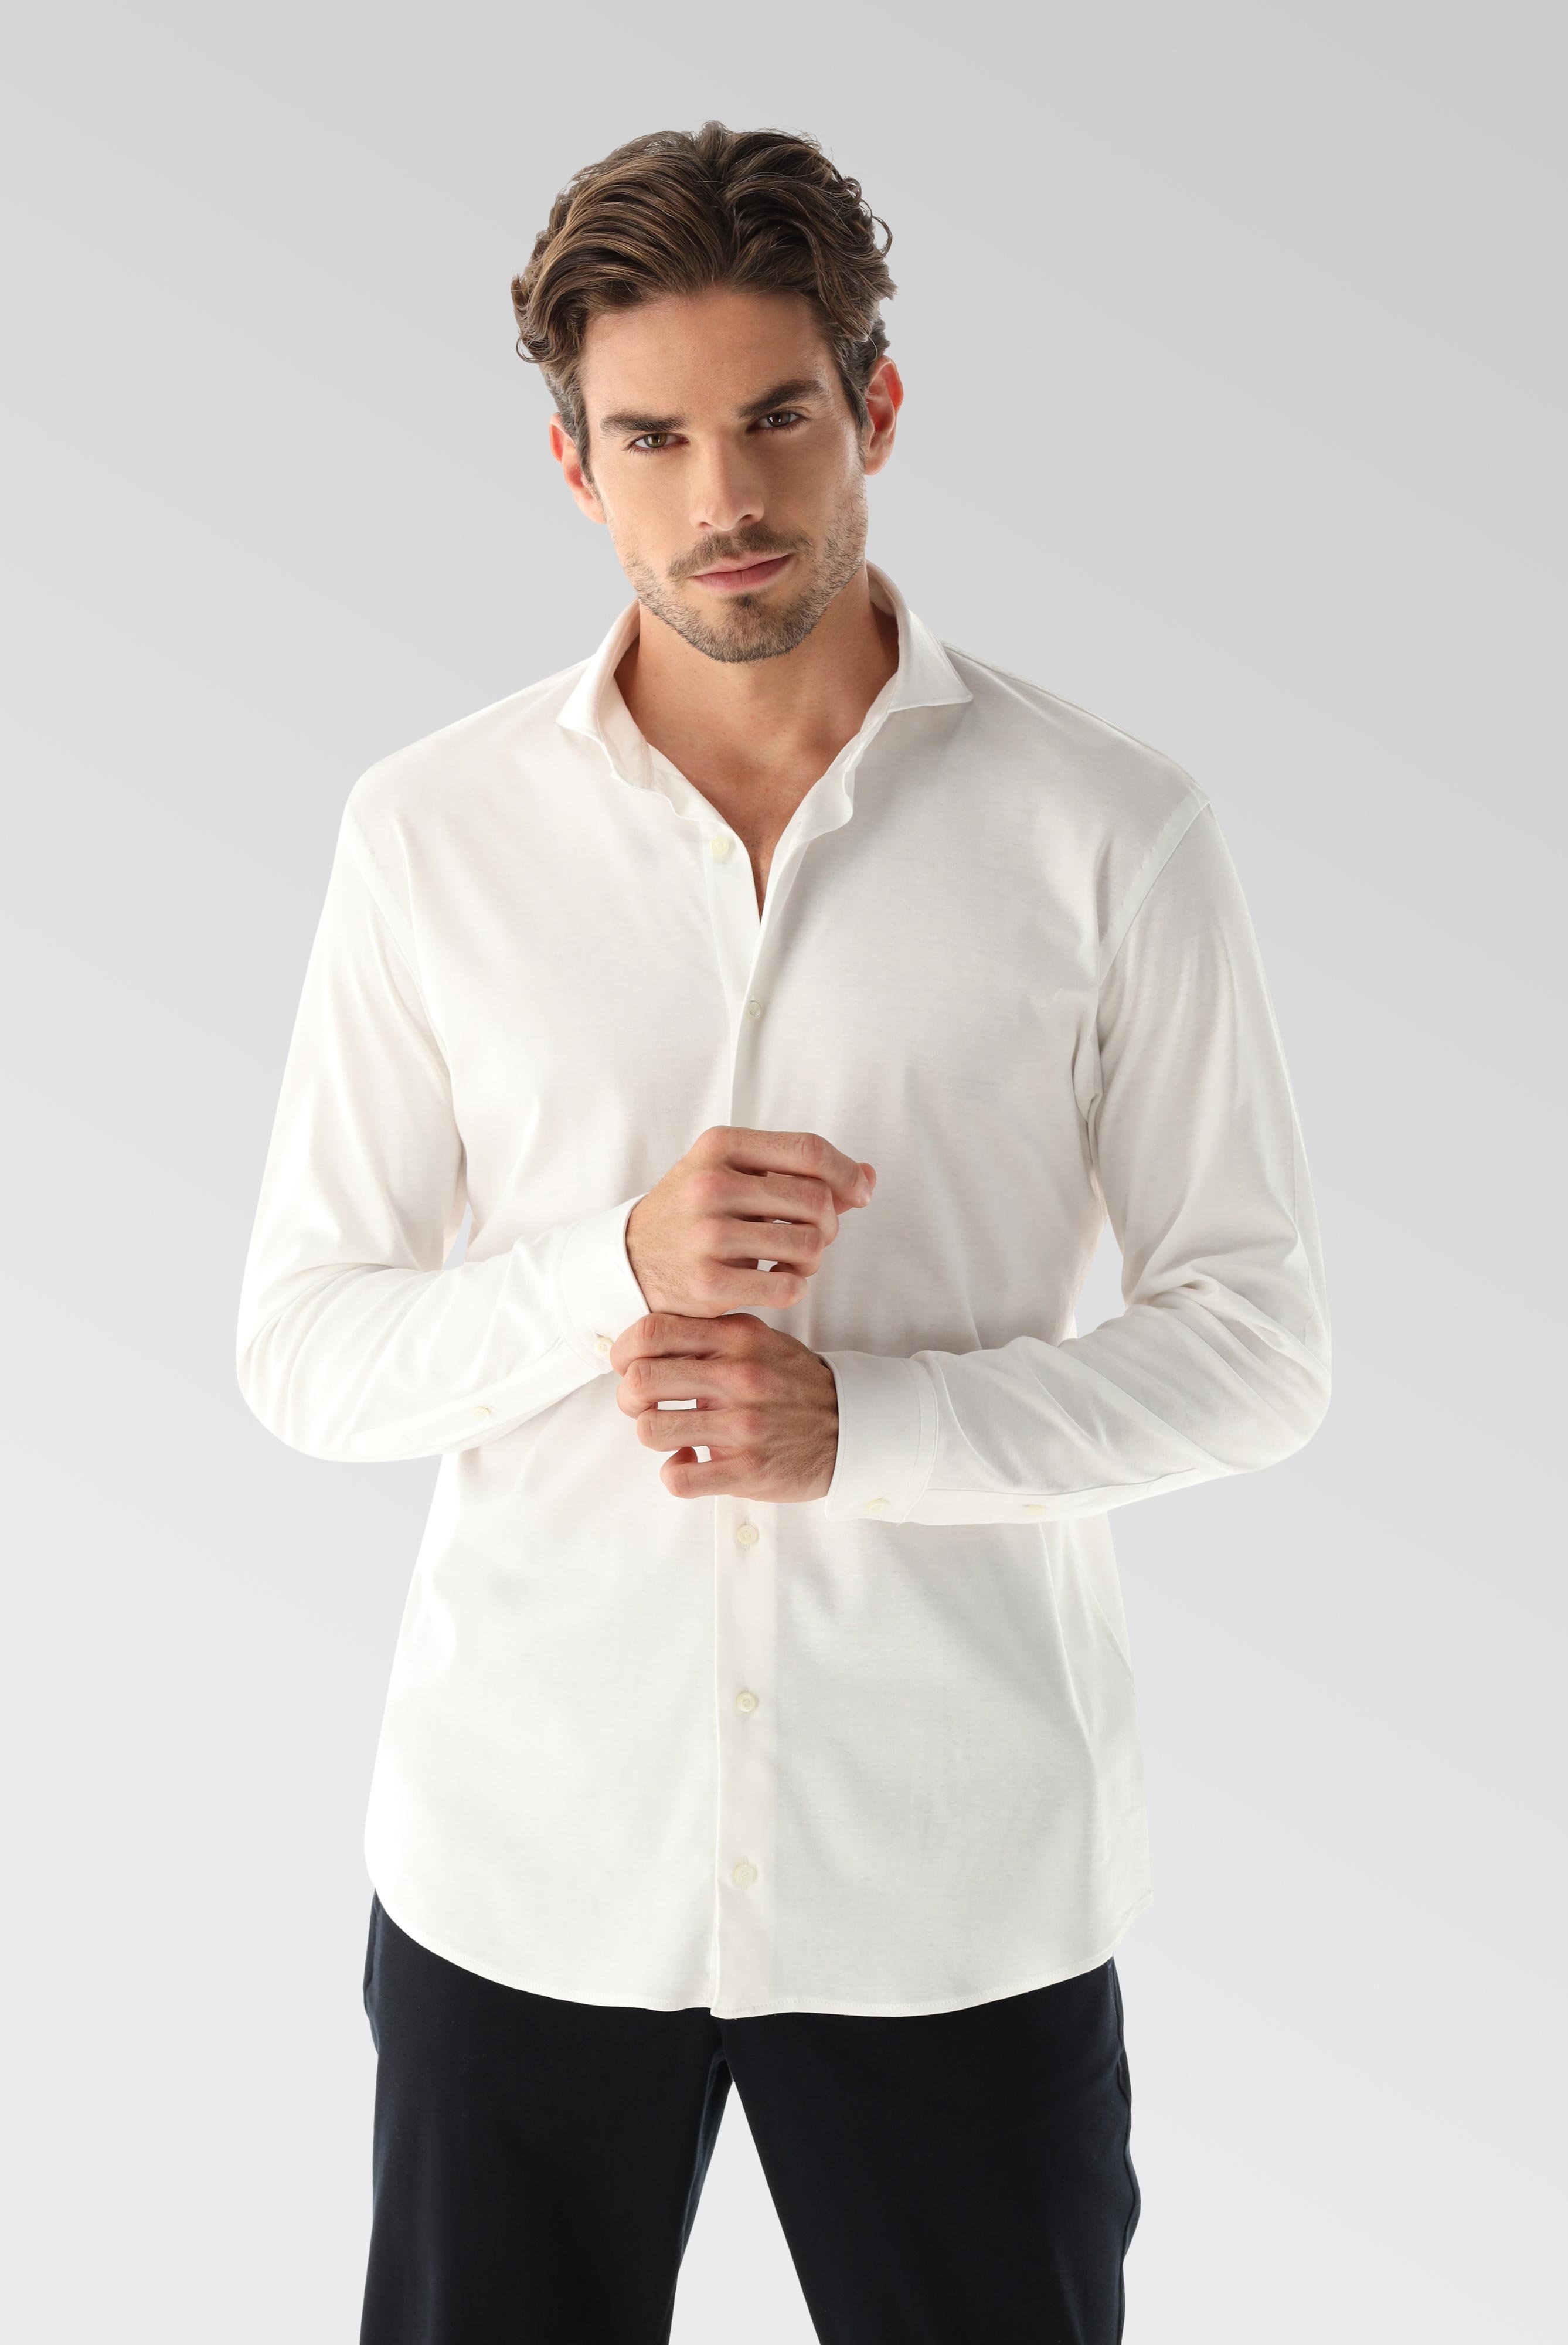 Bügelleichte Hemden+Jersey Hemd mit glänzender Optik Tailor Fit+20.1683.UC.180031.000.X4L